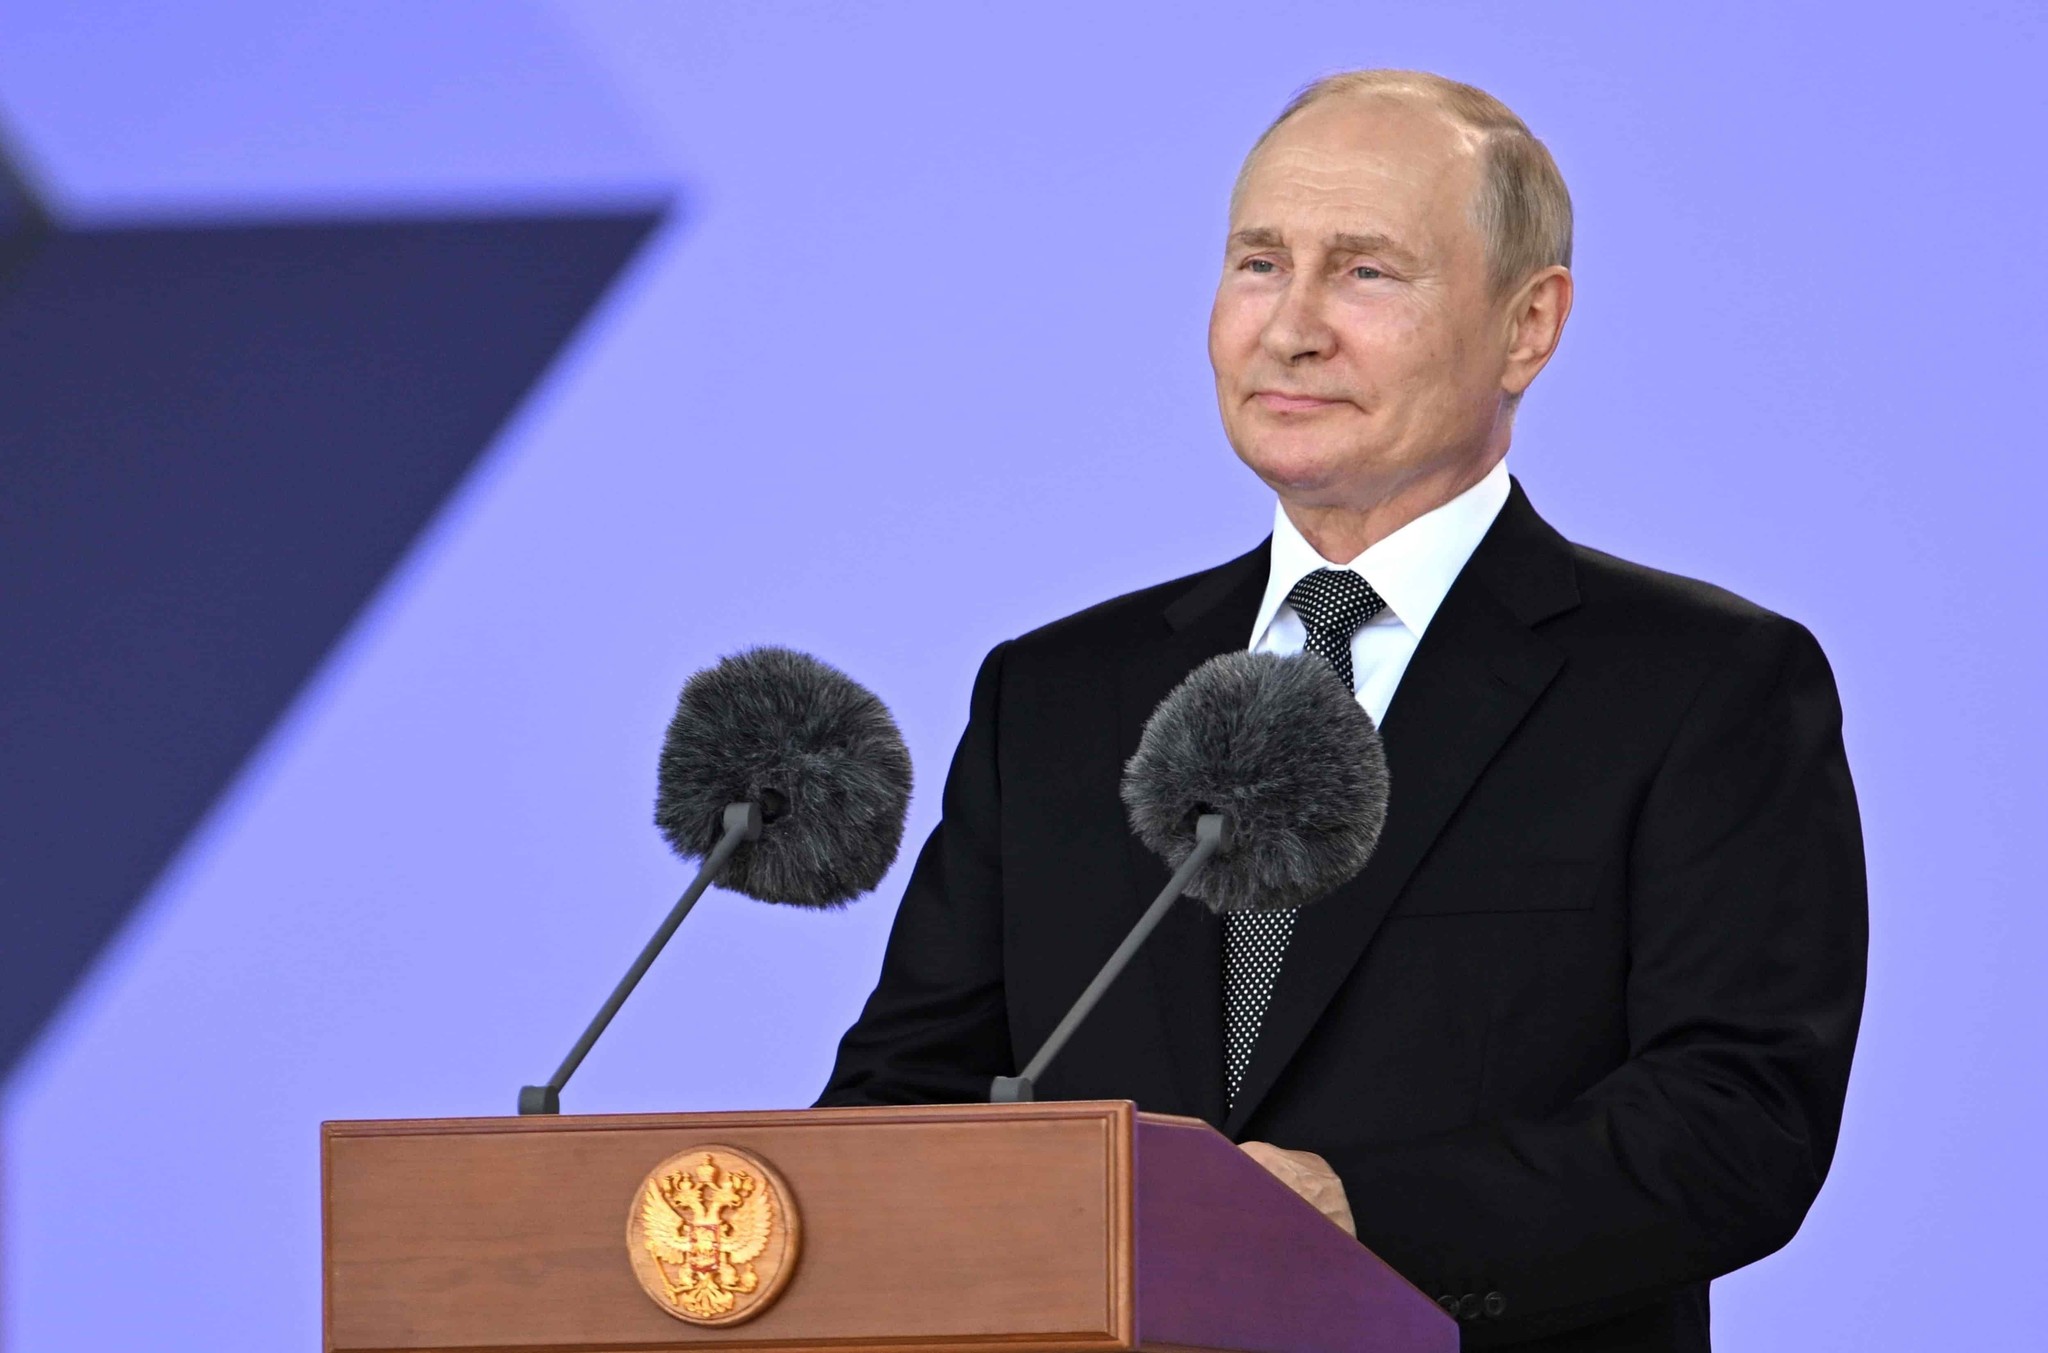 Putin promete ampliar cooperación militar con países aliados